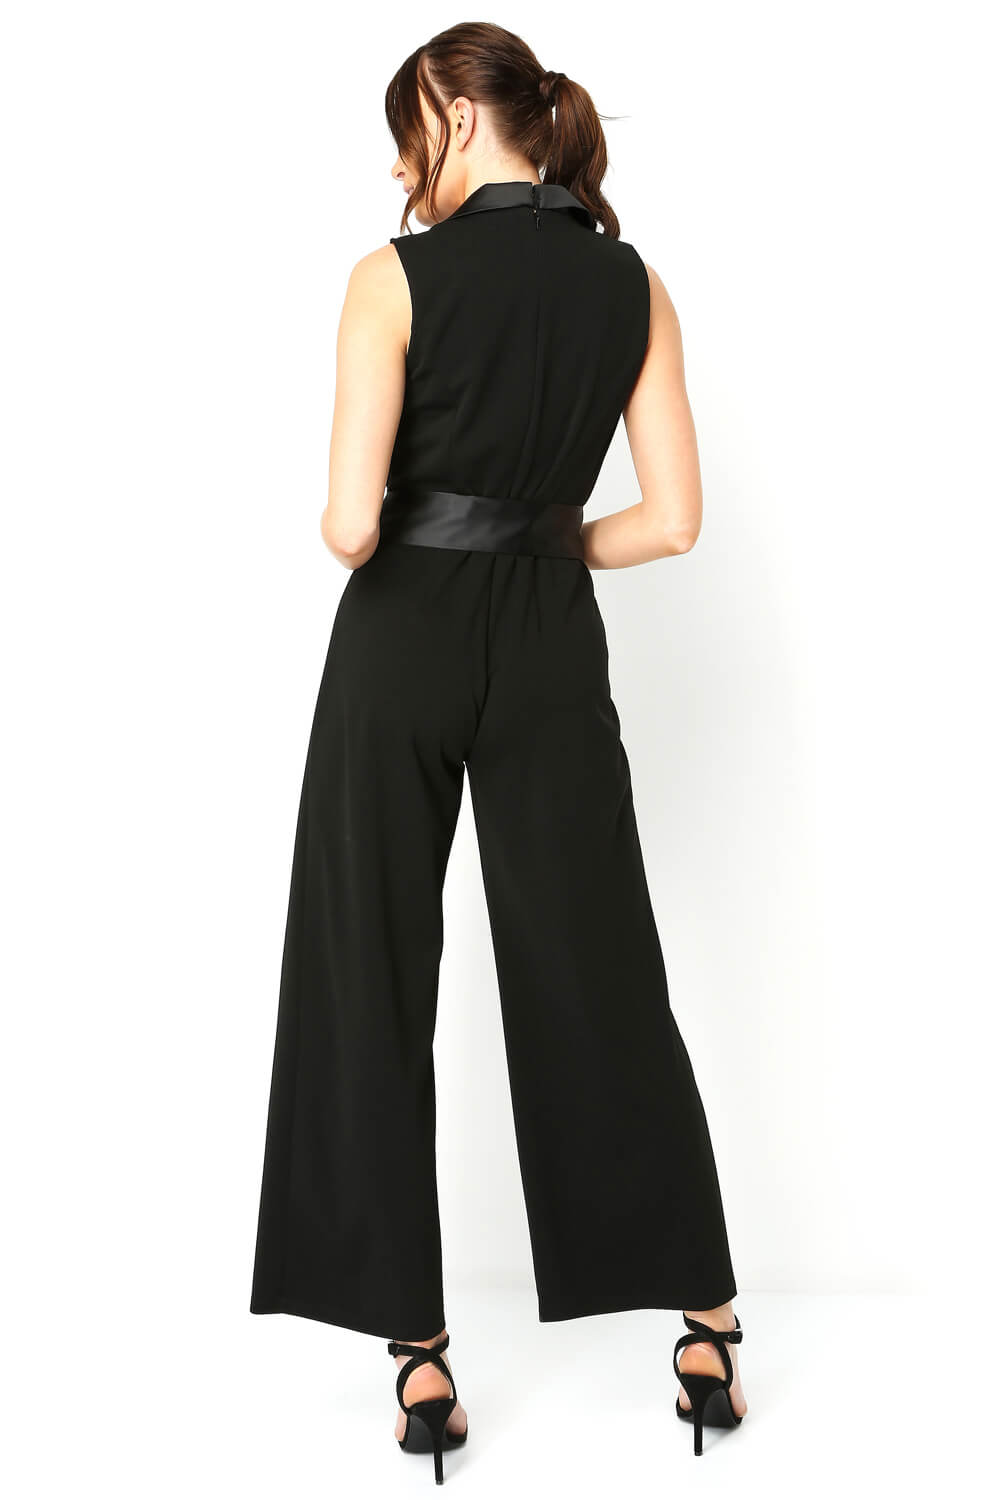 Black Tuxedo Style Jumpsuit, Image 2 of 4